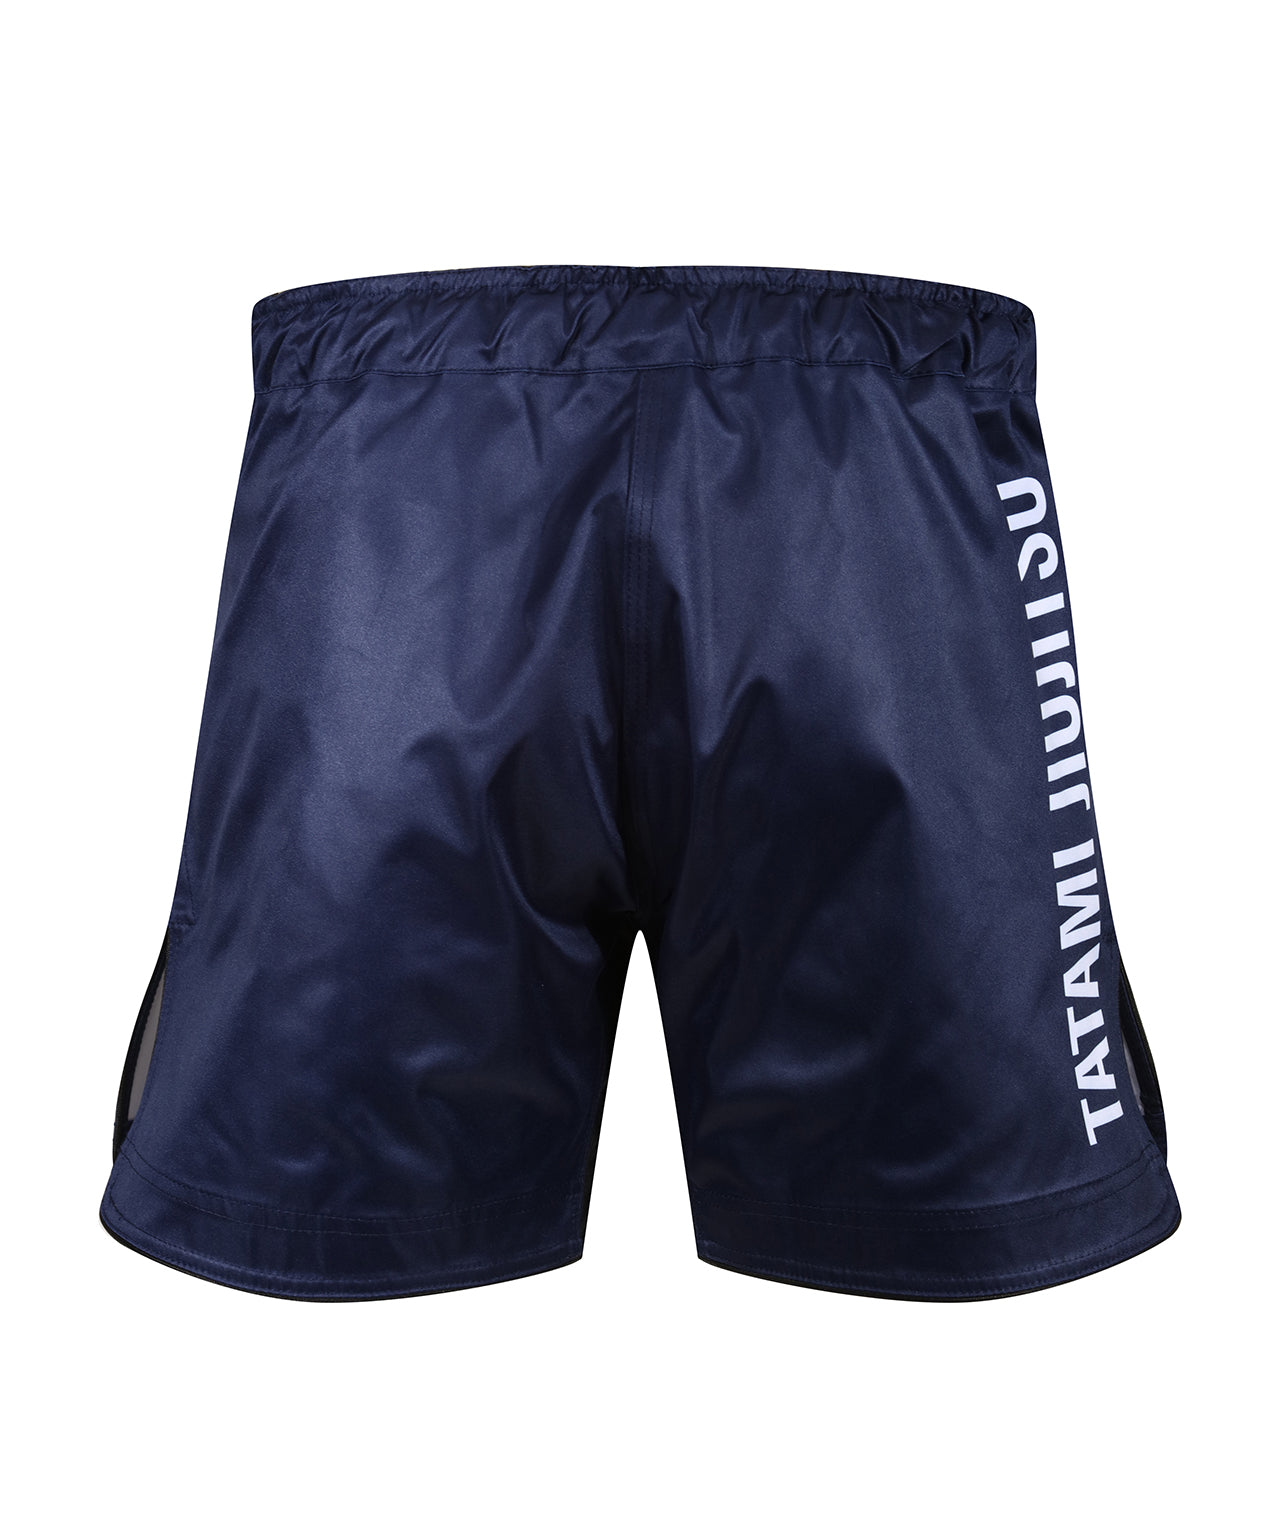 Tatami Impact Mid Cut Grappling Shorts - Navy